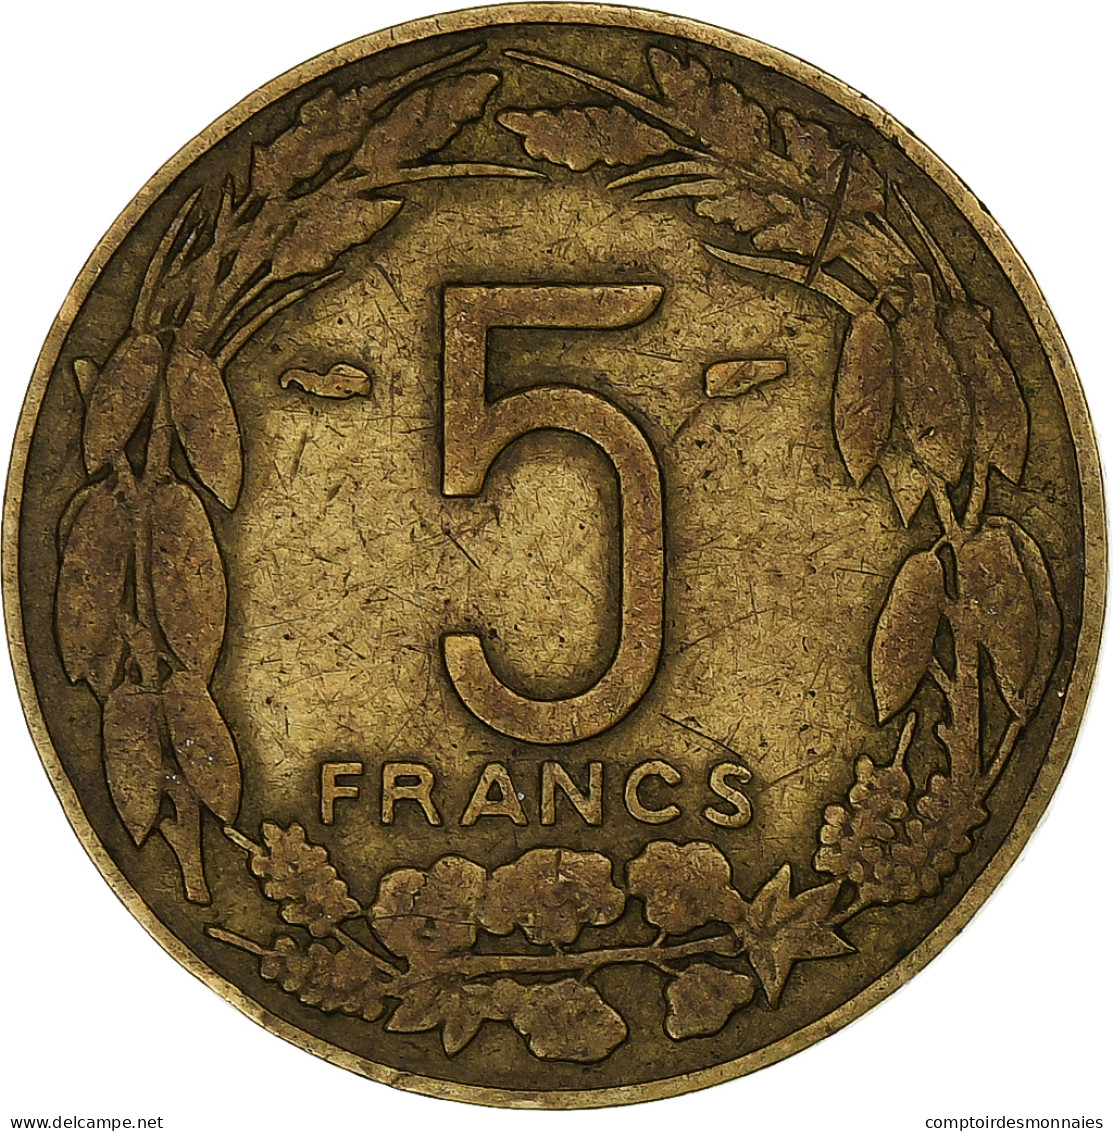 Cameroun, 5 Francs, 1958, Monnaie De Paris, Bronze-Aluminium, TB+, KM:10 - Cameroun